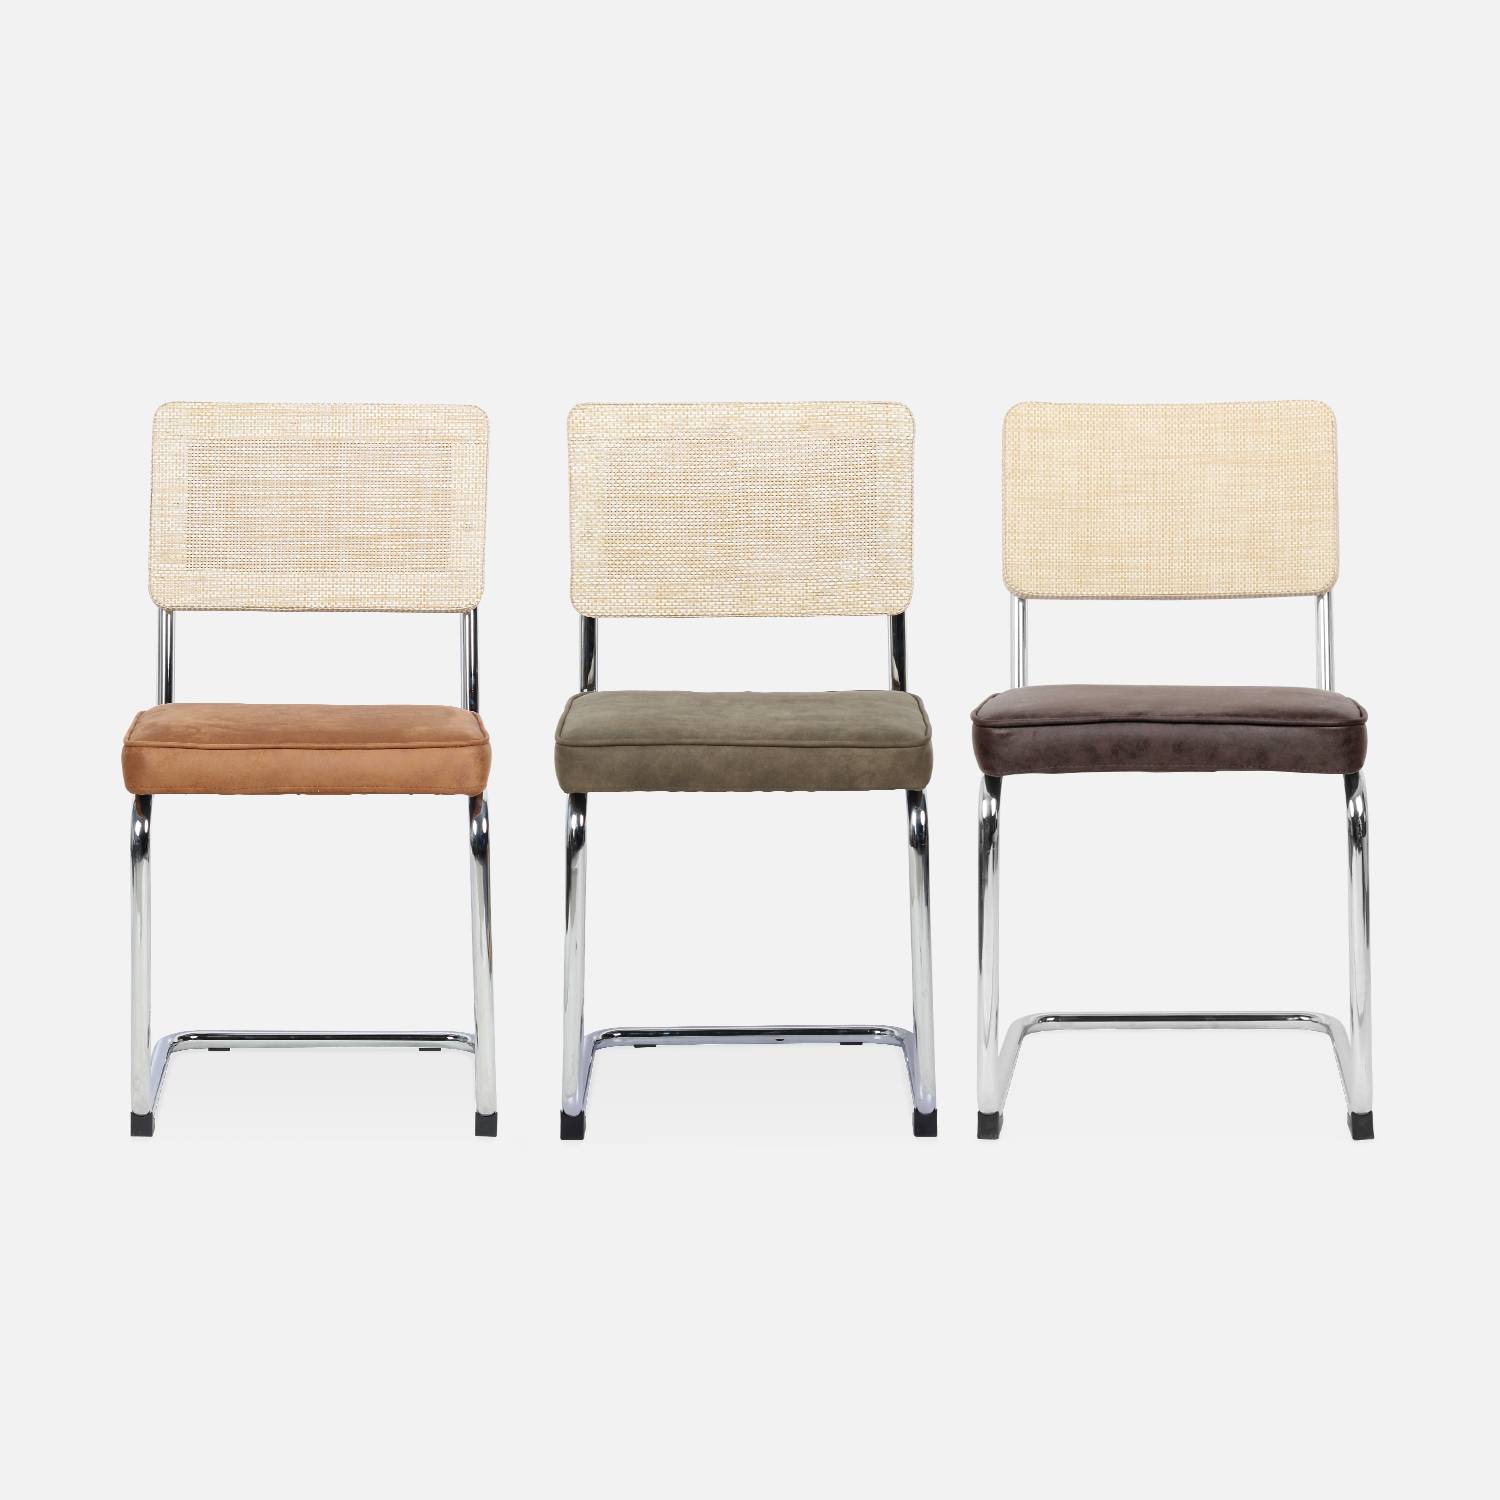 2 cadeiras cantilever - Maja - tecido caqui e resina com efeito de rotim, 46 x 54,5 x 84,5 cm Photo9